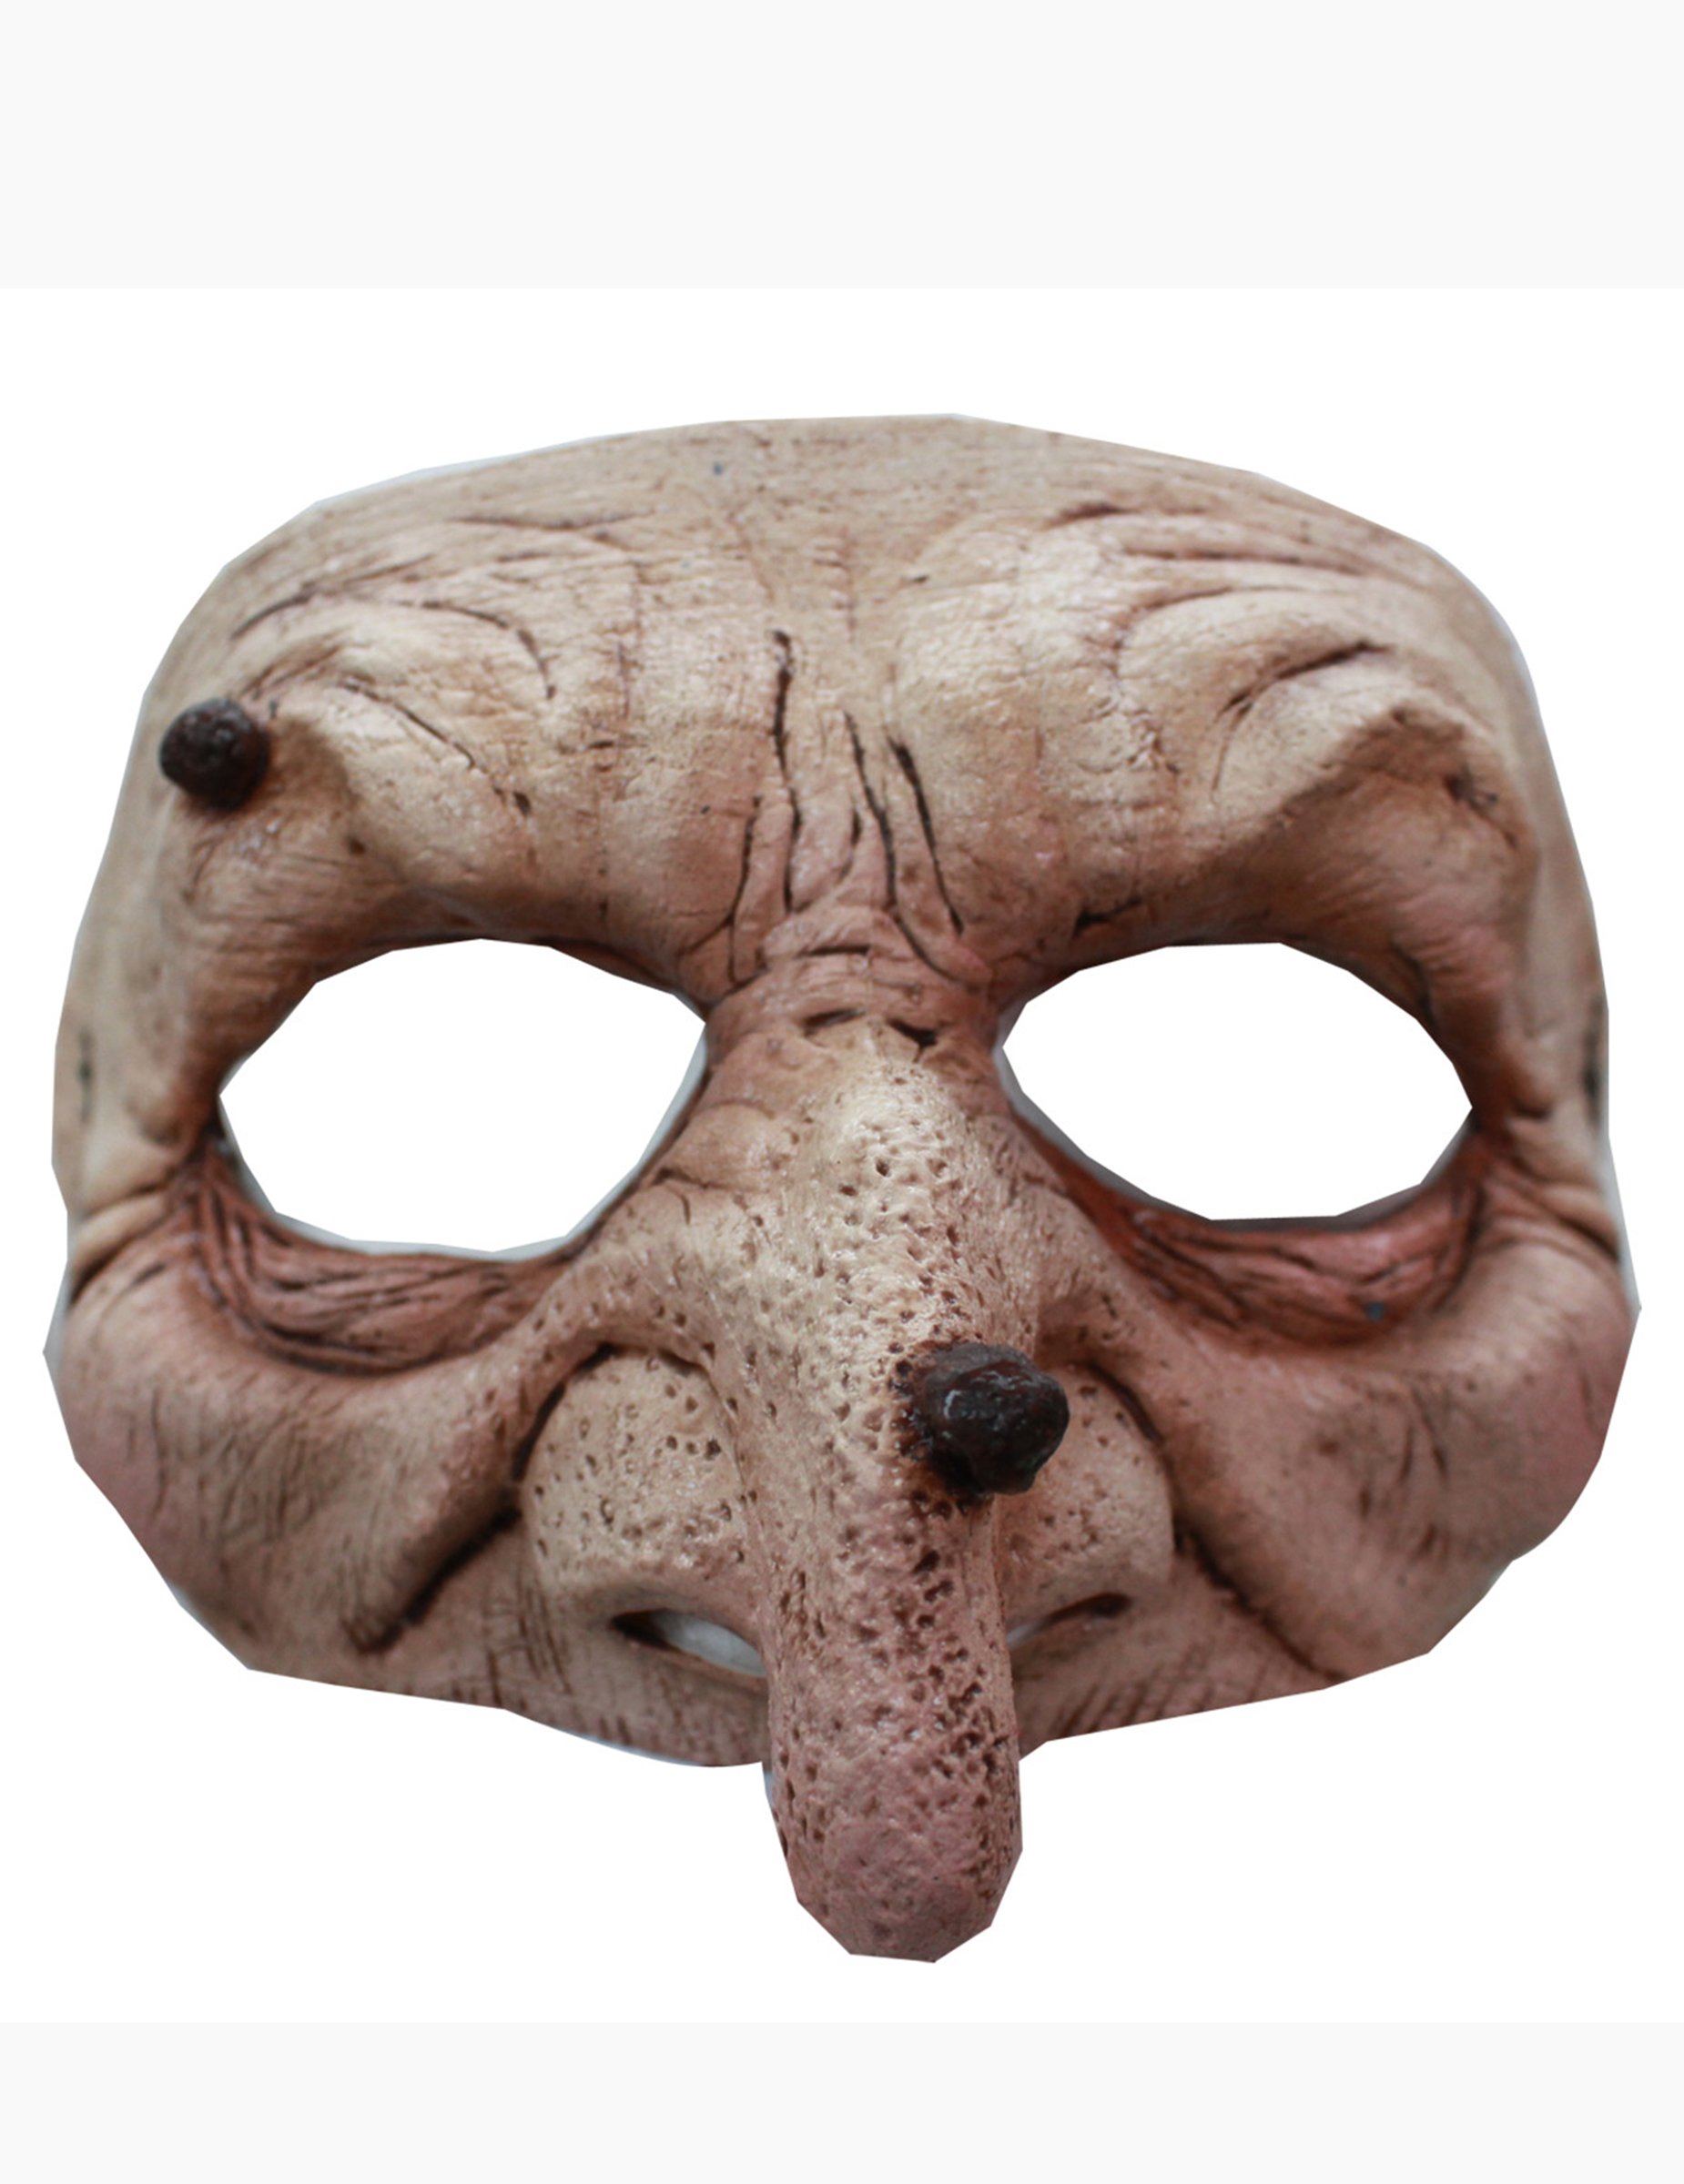 Как сделать своими руками страшную маску: Узнаем как изготовить страшную маску своими руками?